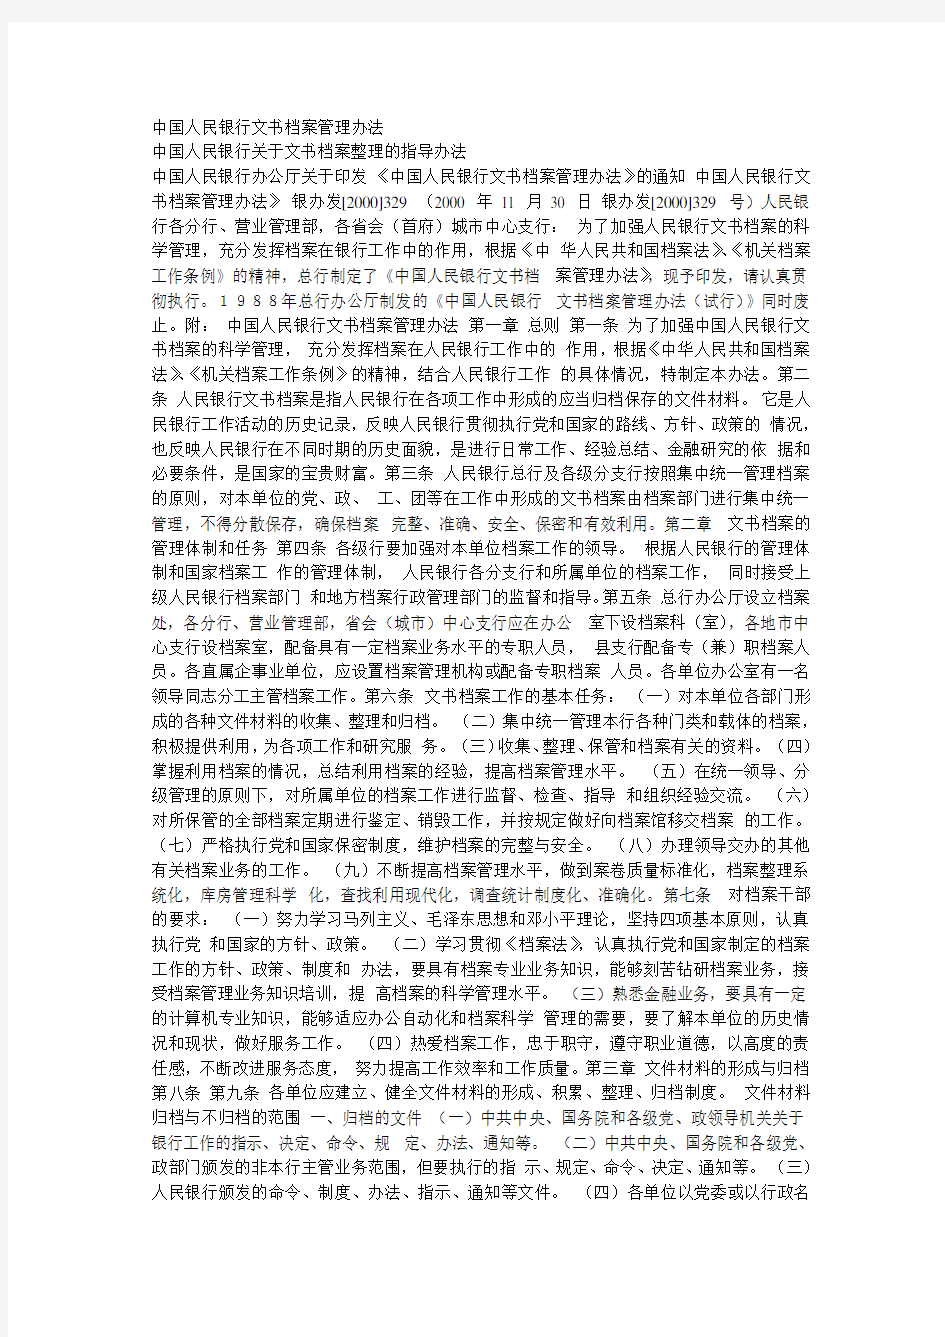 中国人民银行文书档案管理办法